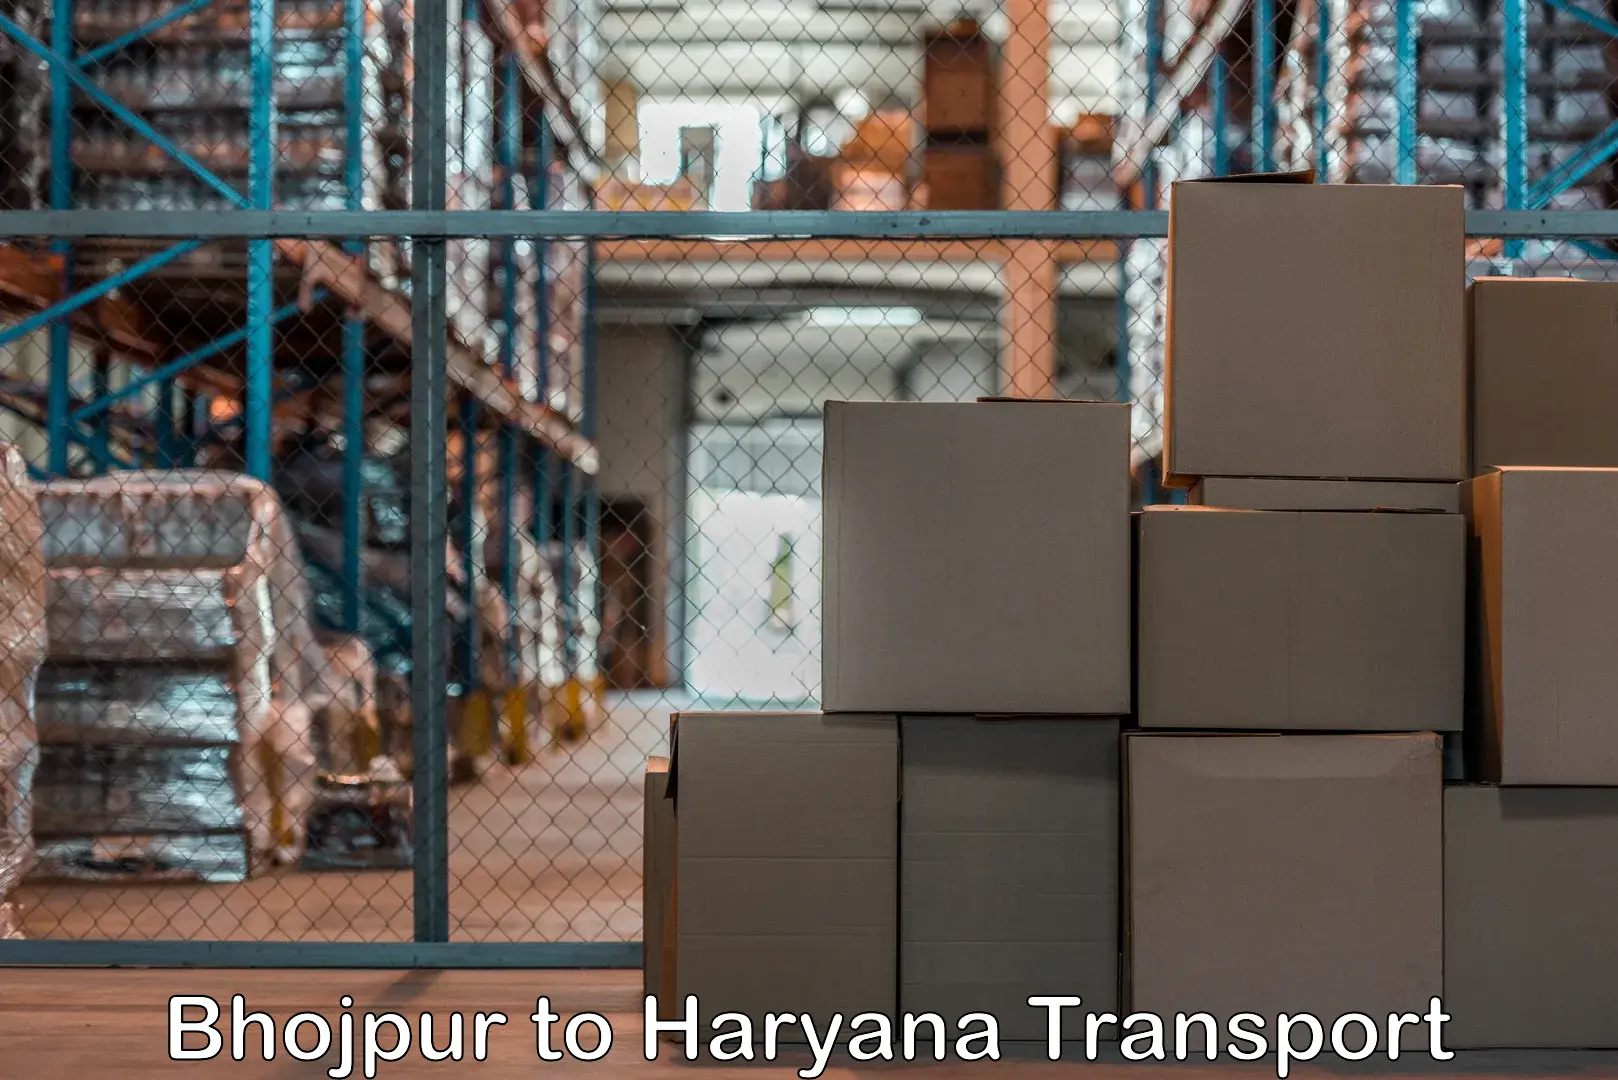 Container transport service Bhojpur to Kurukshetra